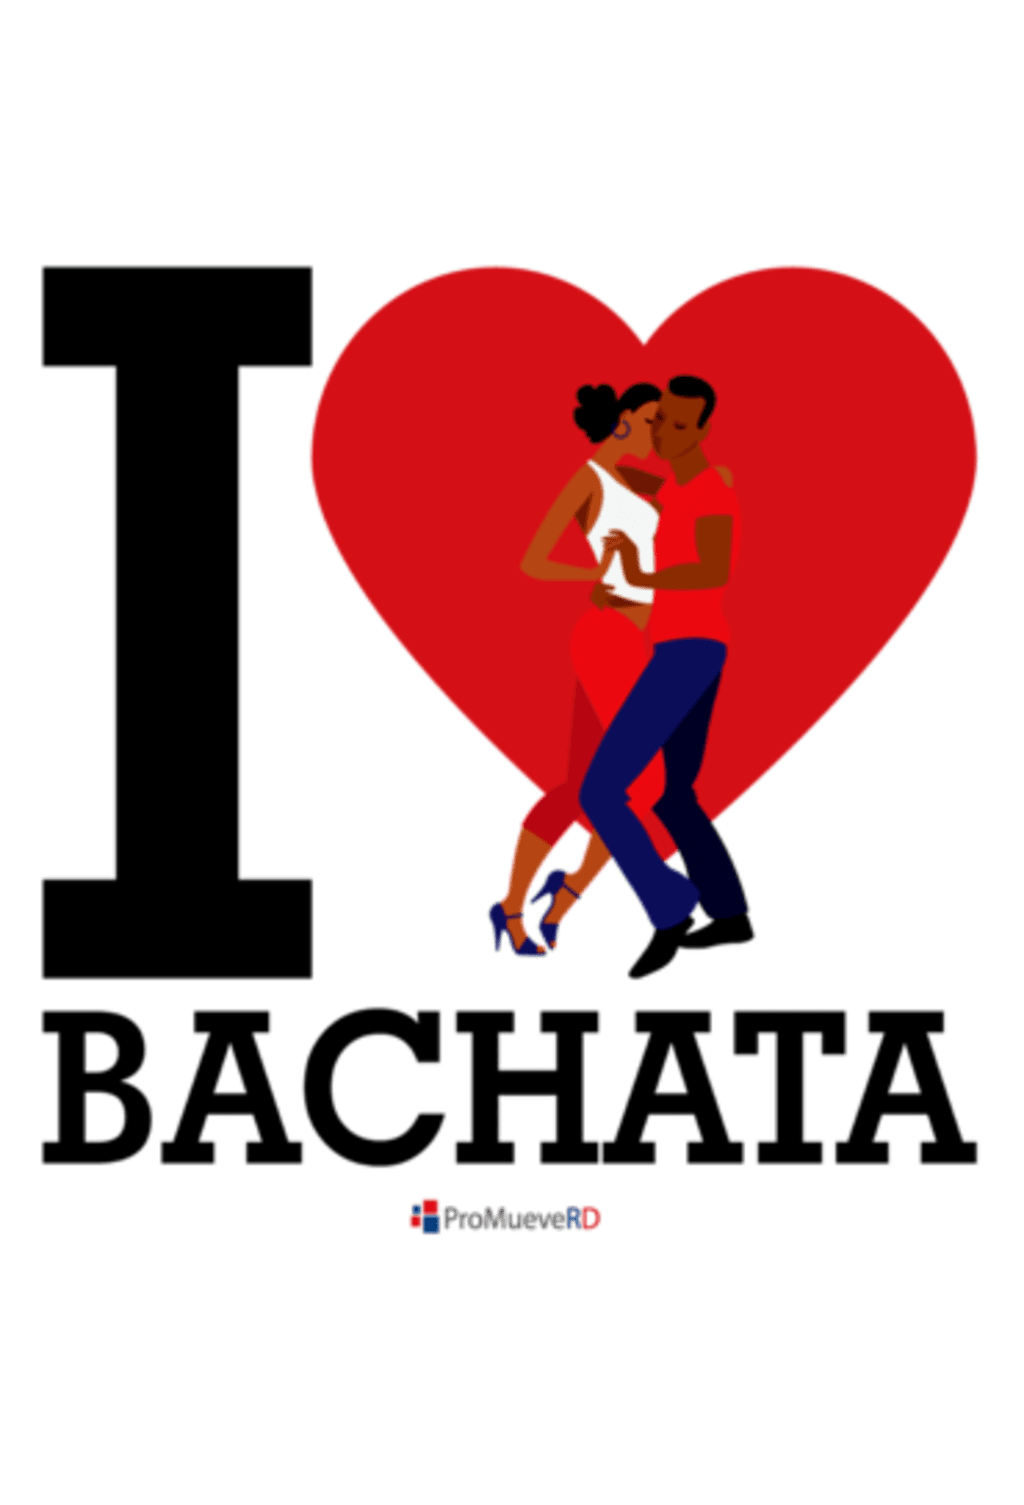 I LOVE BACHATA